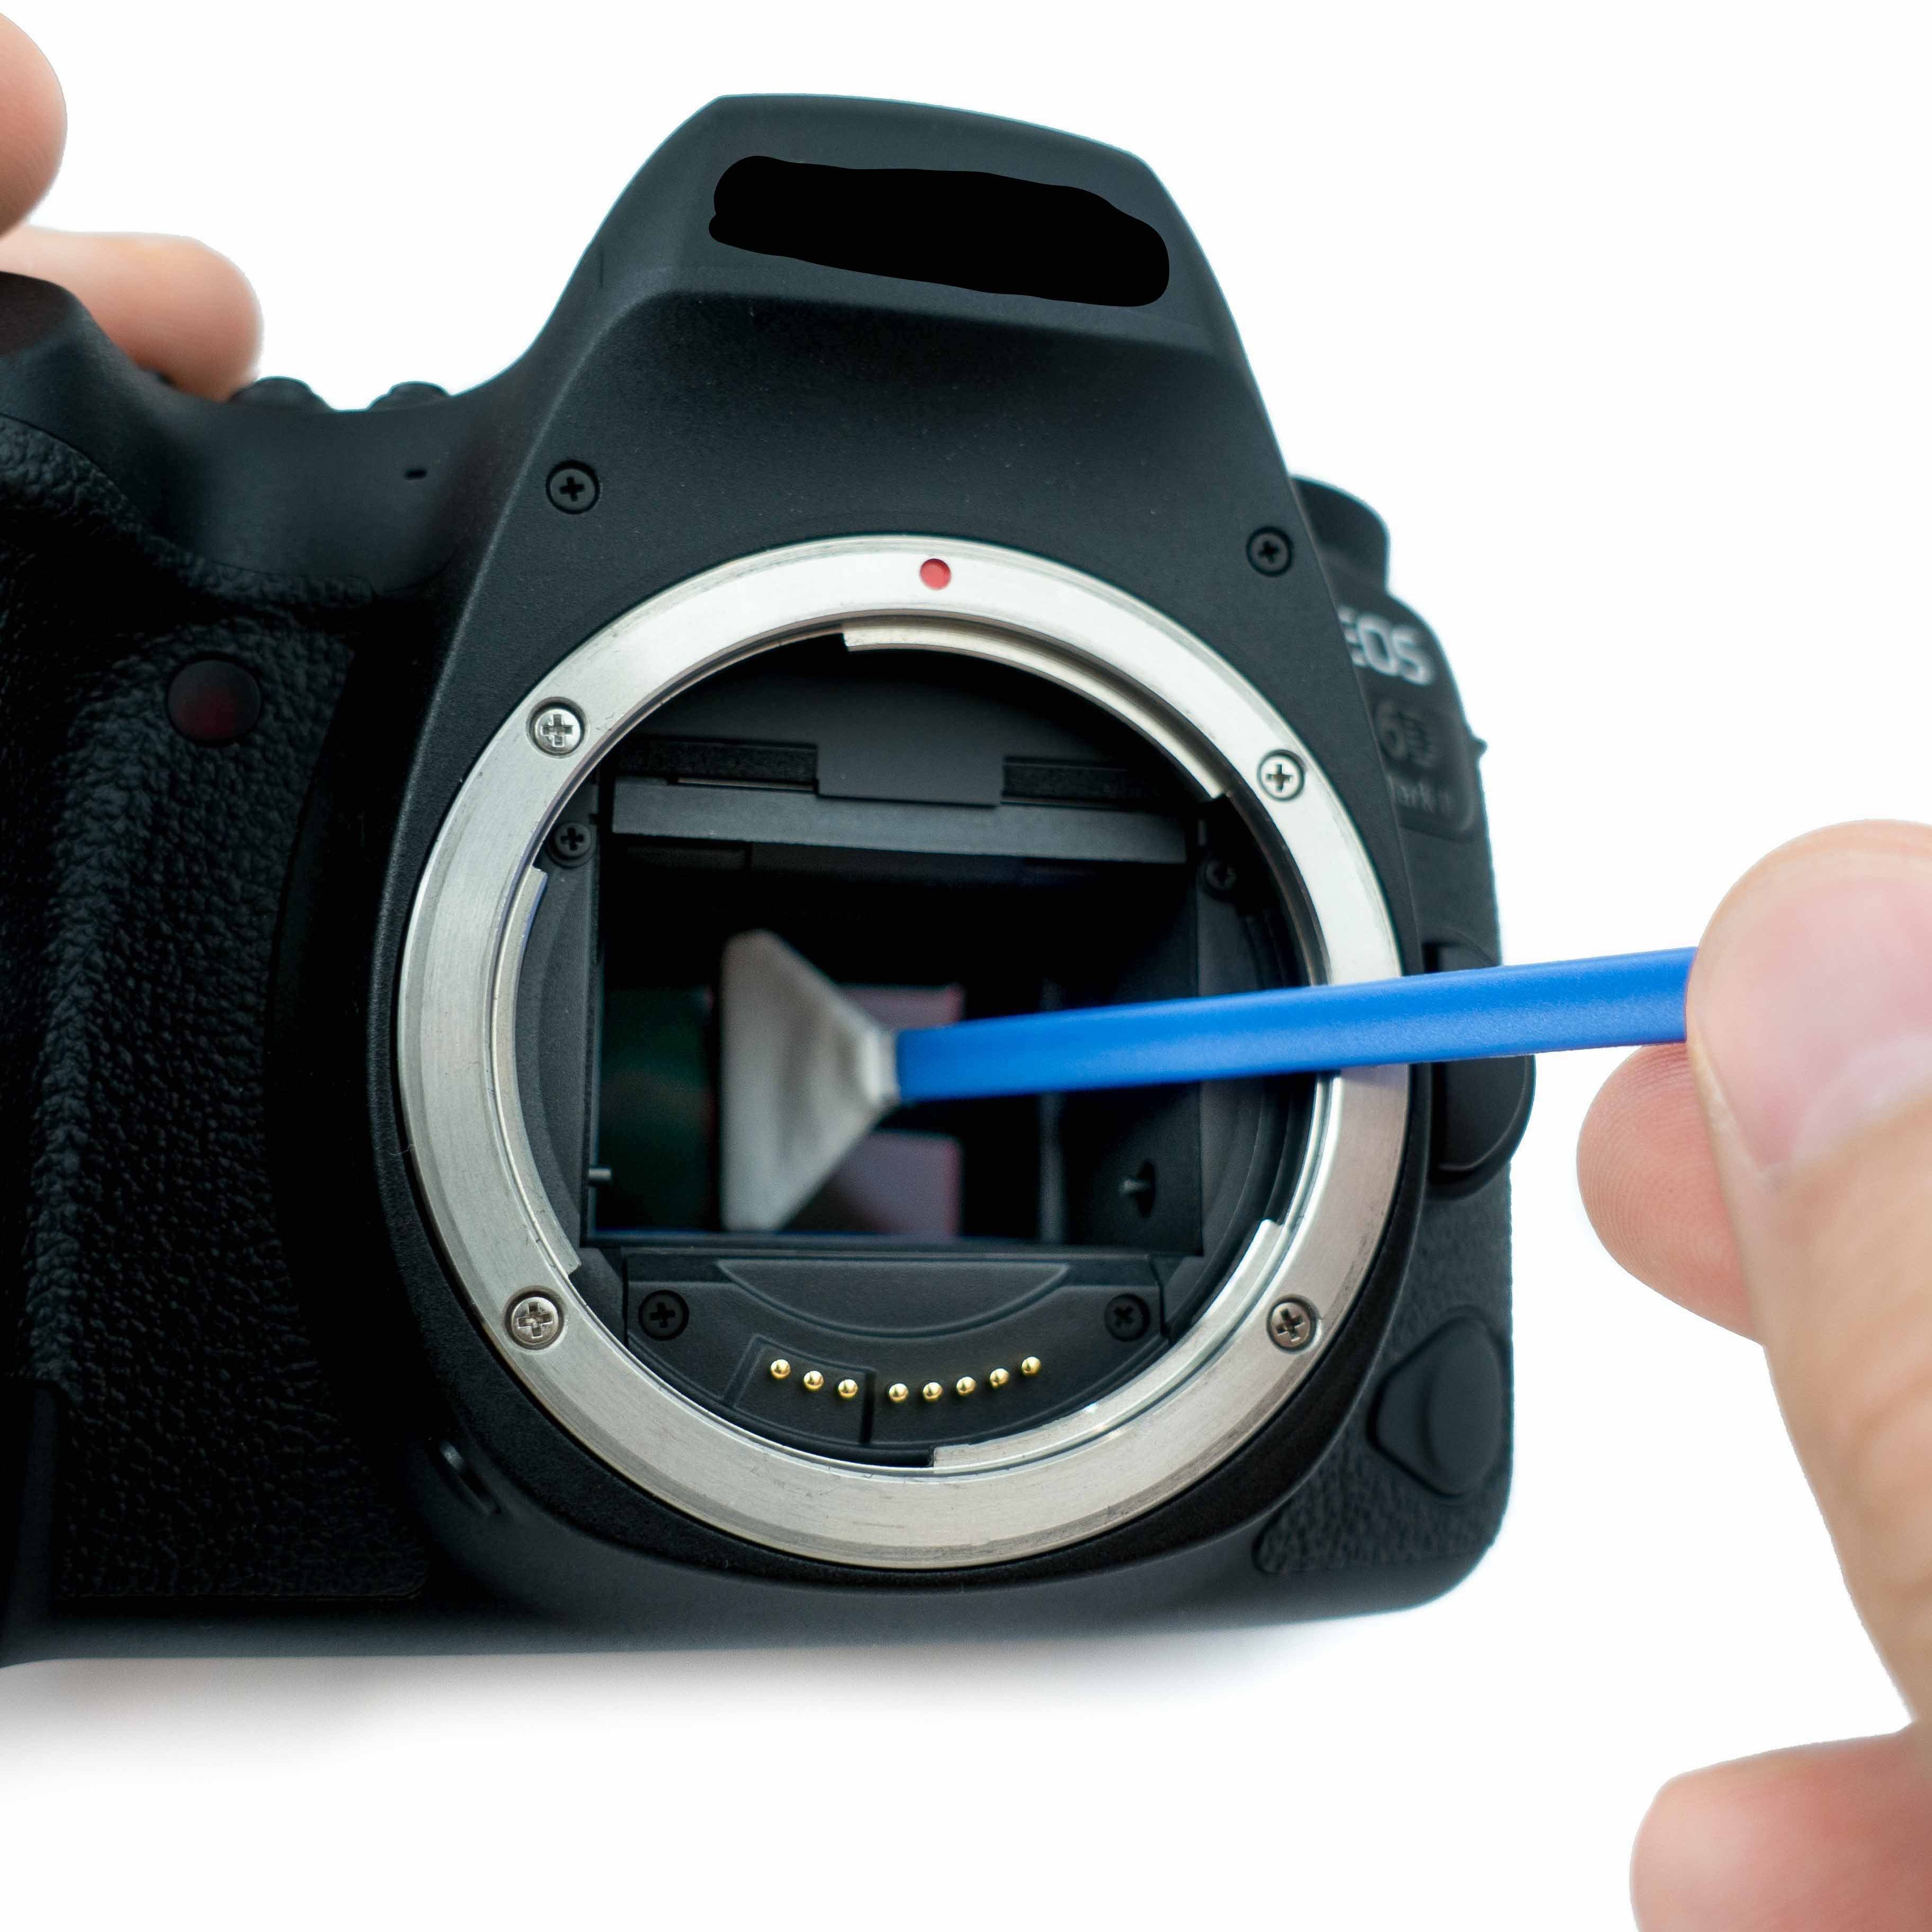 Kamera für inkl. 24mm Set) Set Swabs pro Reinigungsset verpackte APS-C MFT einzelnen Kamerazubehör-Set oder mit (12 Flüssigreiniger Swabs Sensor einzeln Sensoren., Vollformat, Swabs oder Lens-Aid als